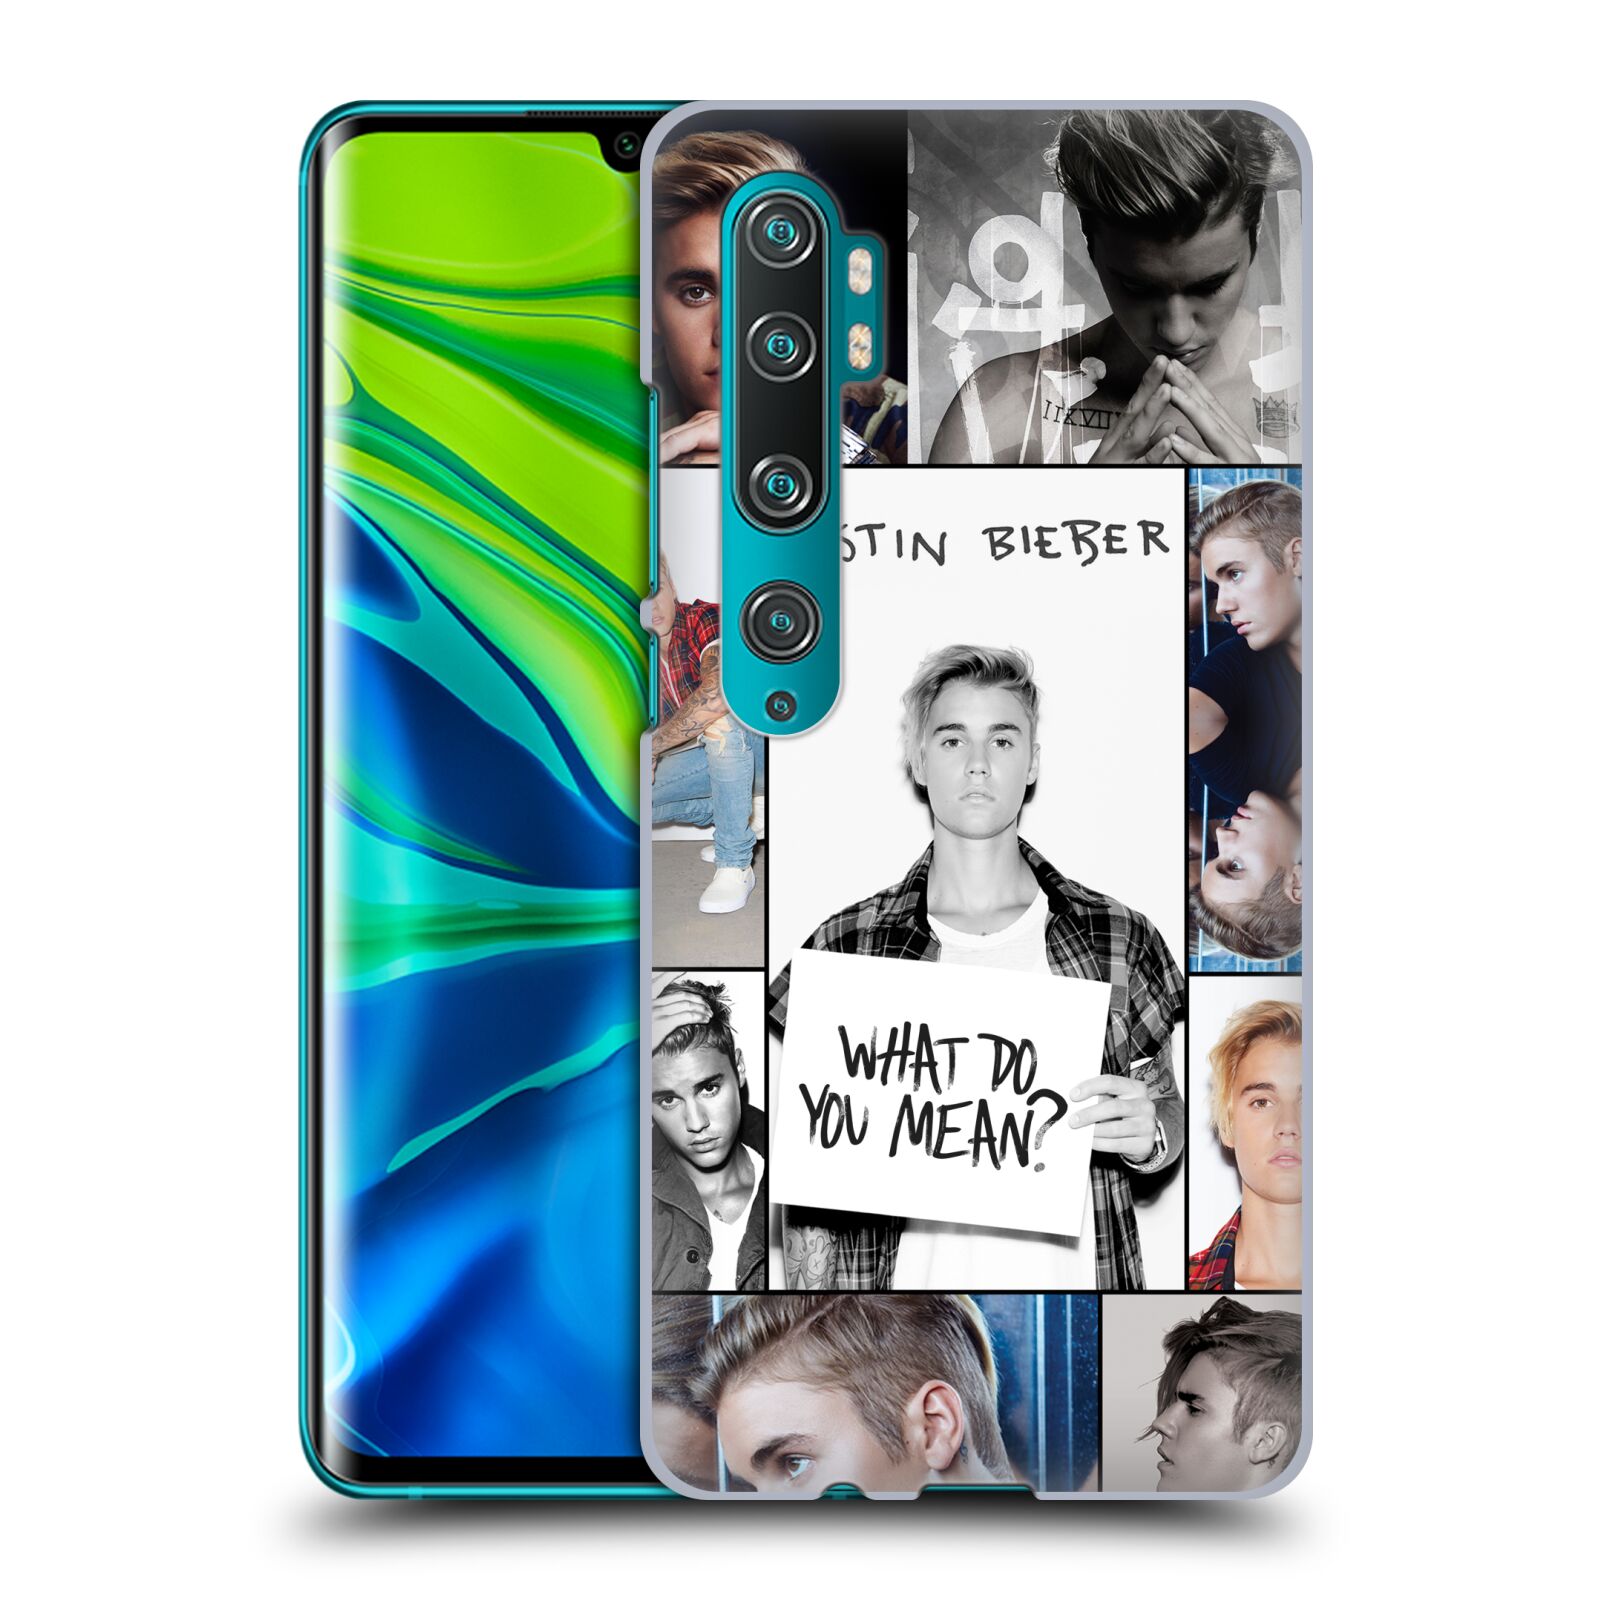 Pouzdro na mobil Xiaomi Mi Note 10 / Mi Note 10 PRO - HEAD CASE - Justin Bieber foto Purpose malé fotky